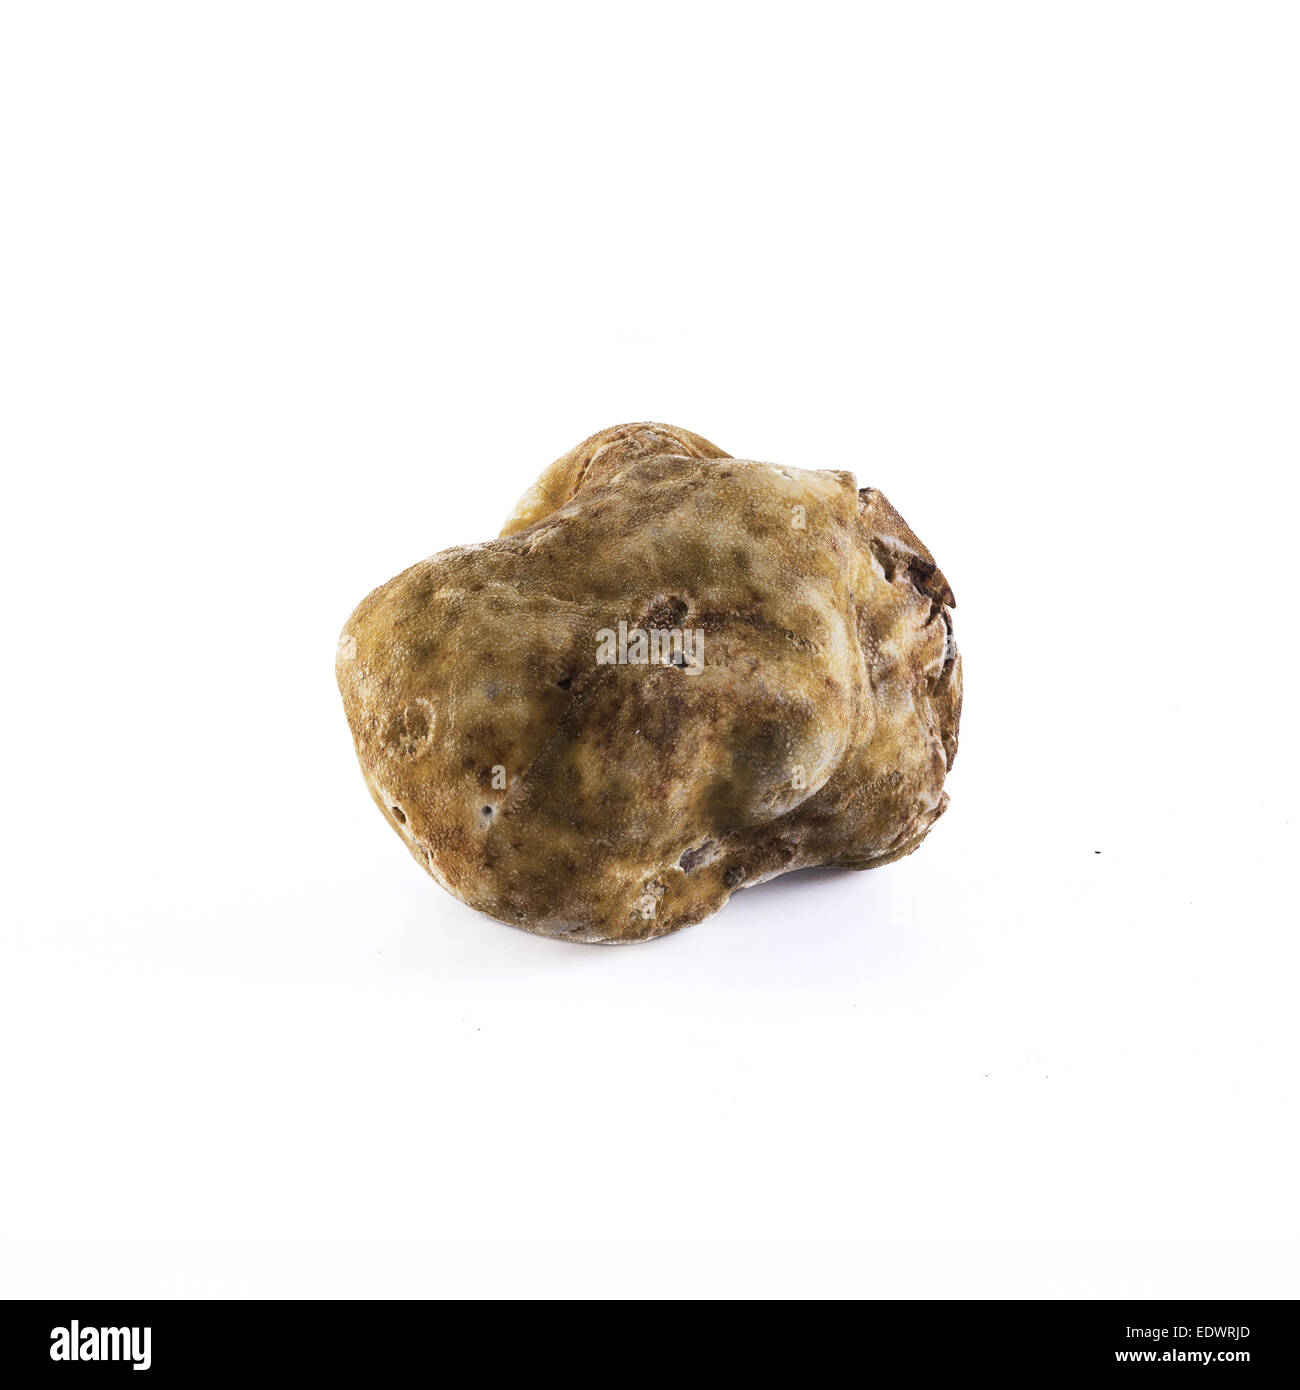 white-truffle-tuber-magnatum-pico-from-alba-italy-EDWRJD.jpg